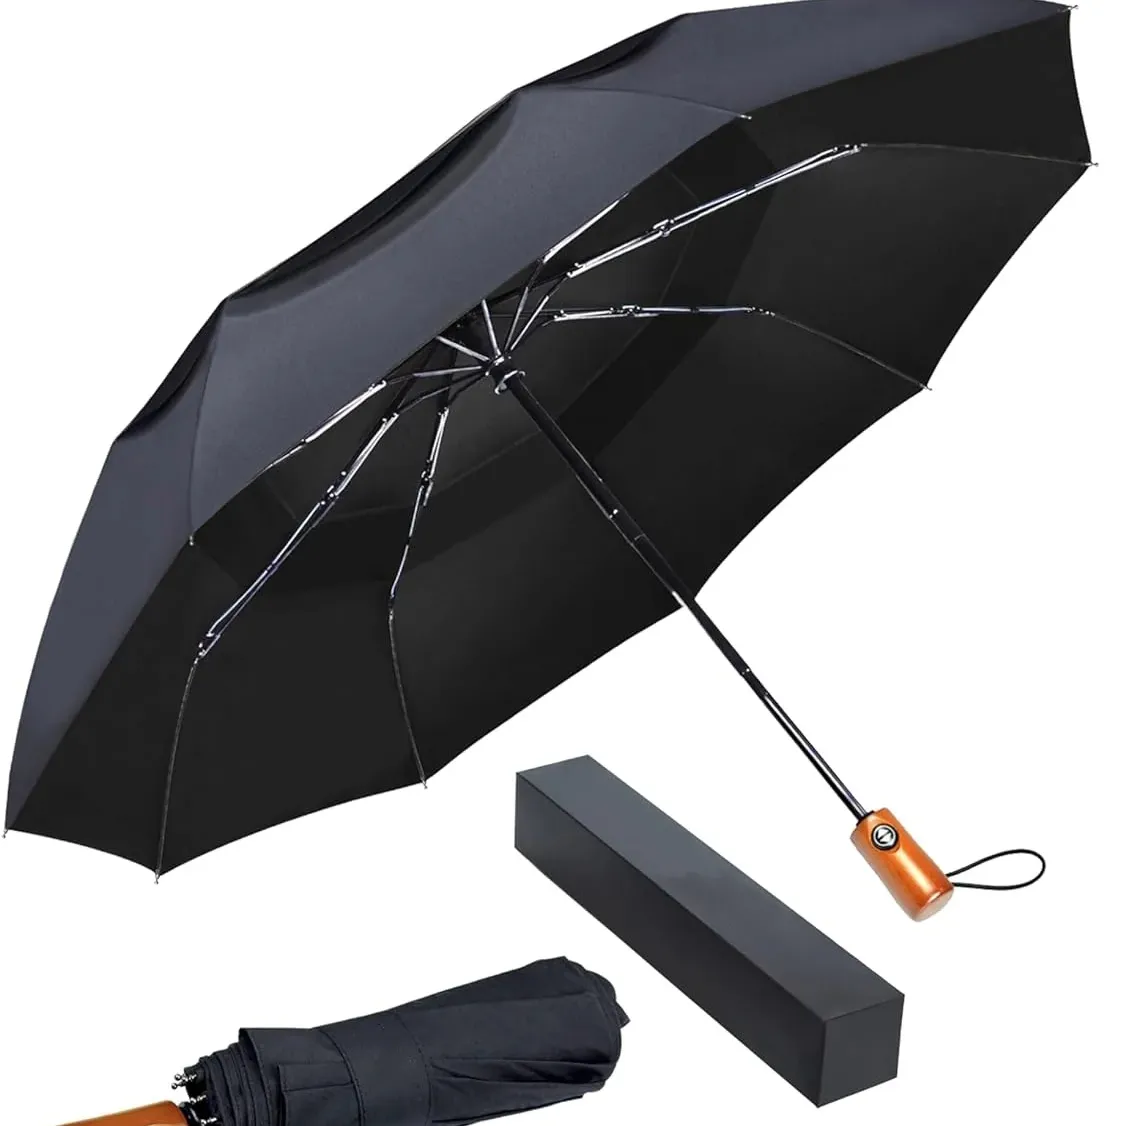 Premium-großer winddichter kompakter automatischer Regenschirm mit Doppelvordach für Herren und Damen